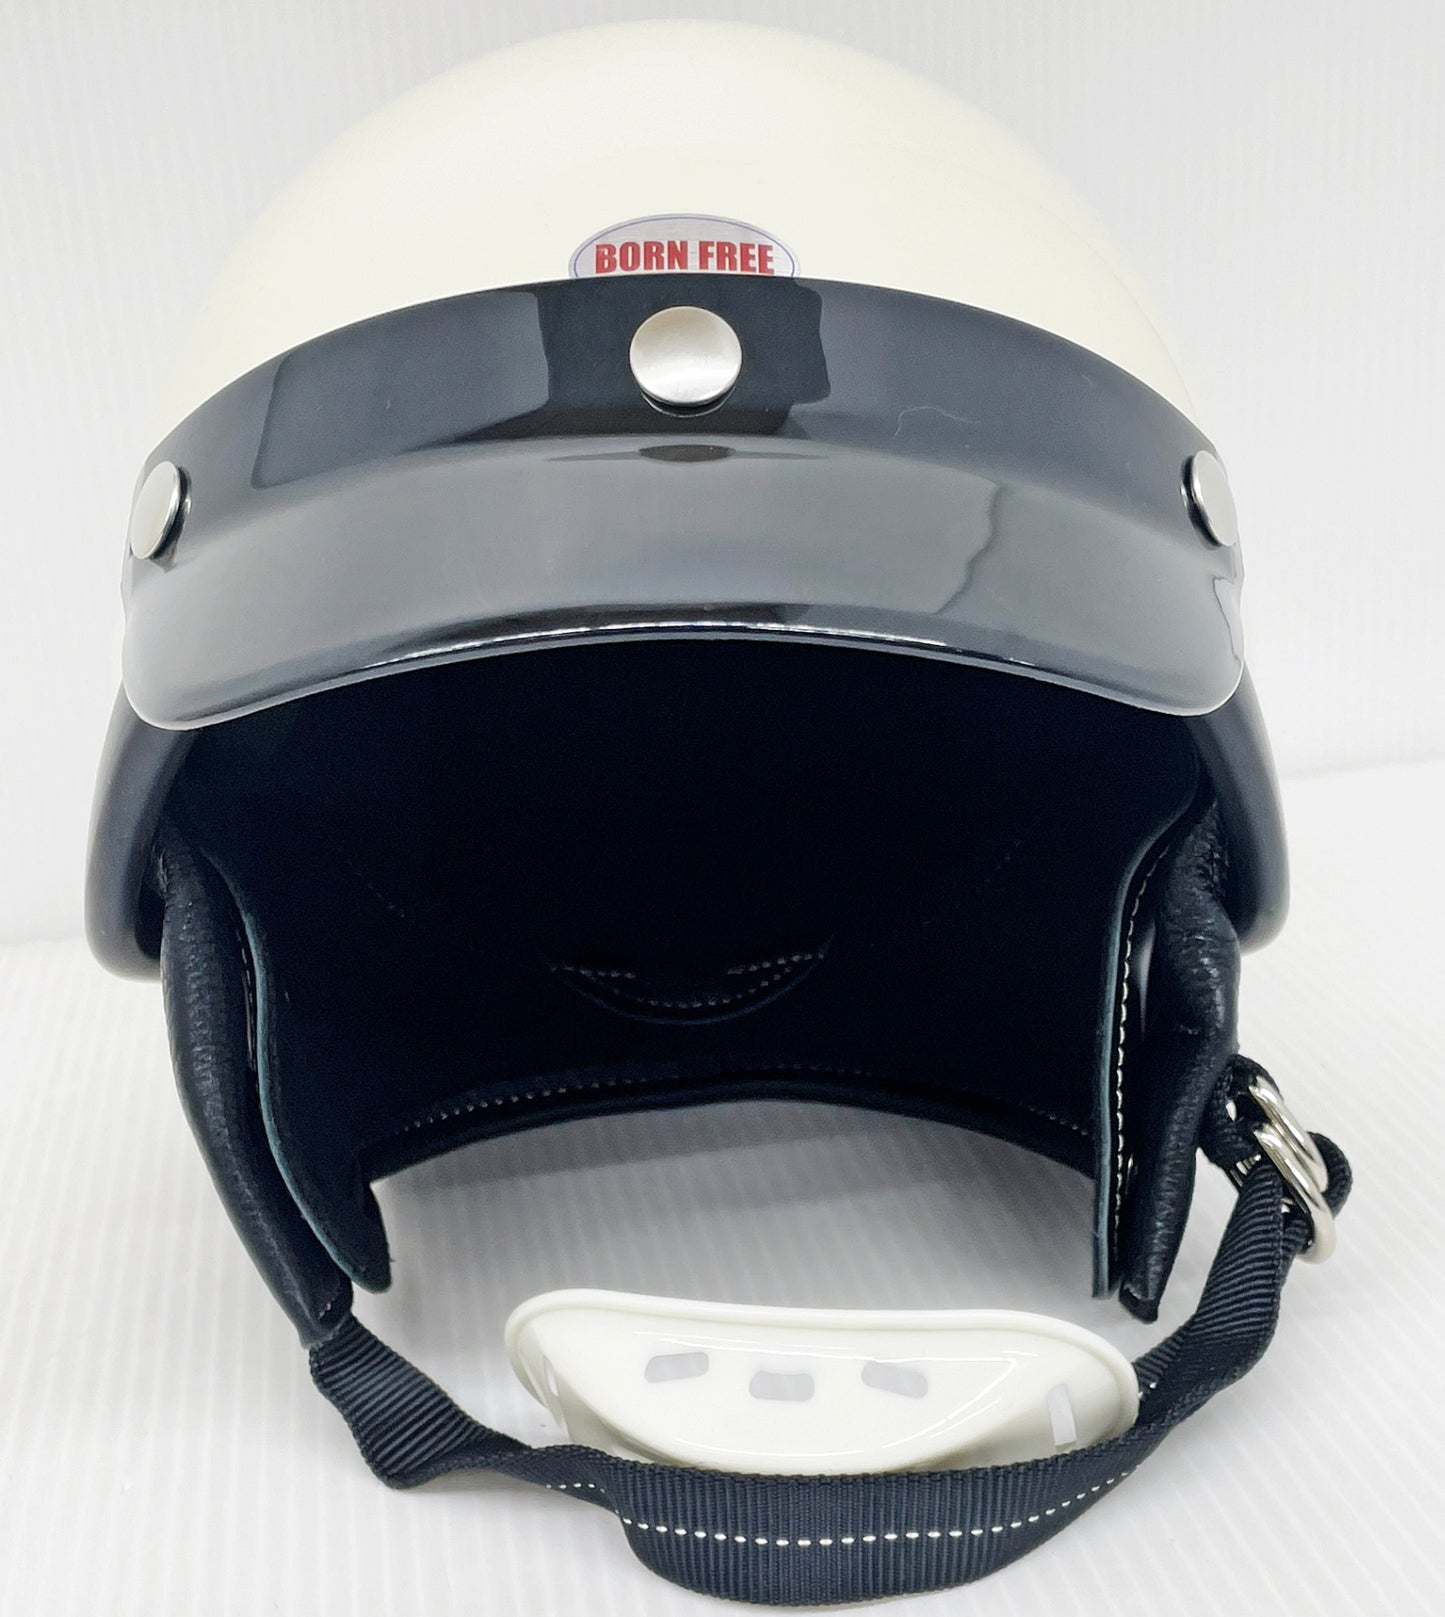 BORN FREE SHORTY ヘルメット アイボリーホワイト サイズM/L バイザー イヤーカバー 白黒チンカップ 収納袋付